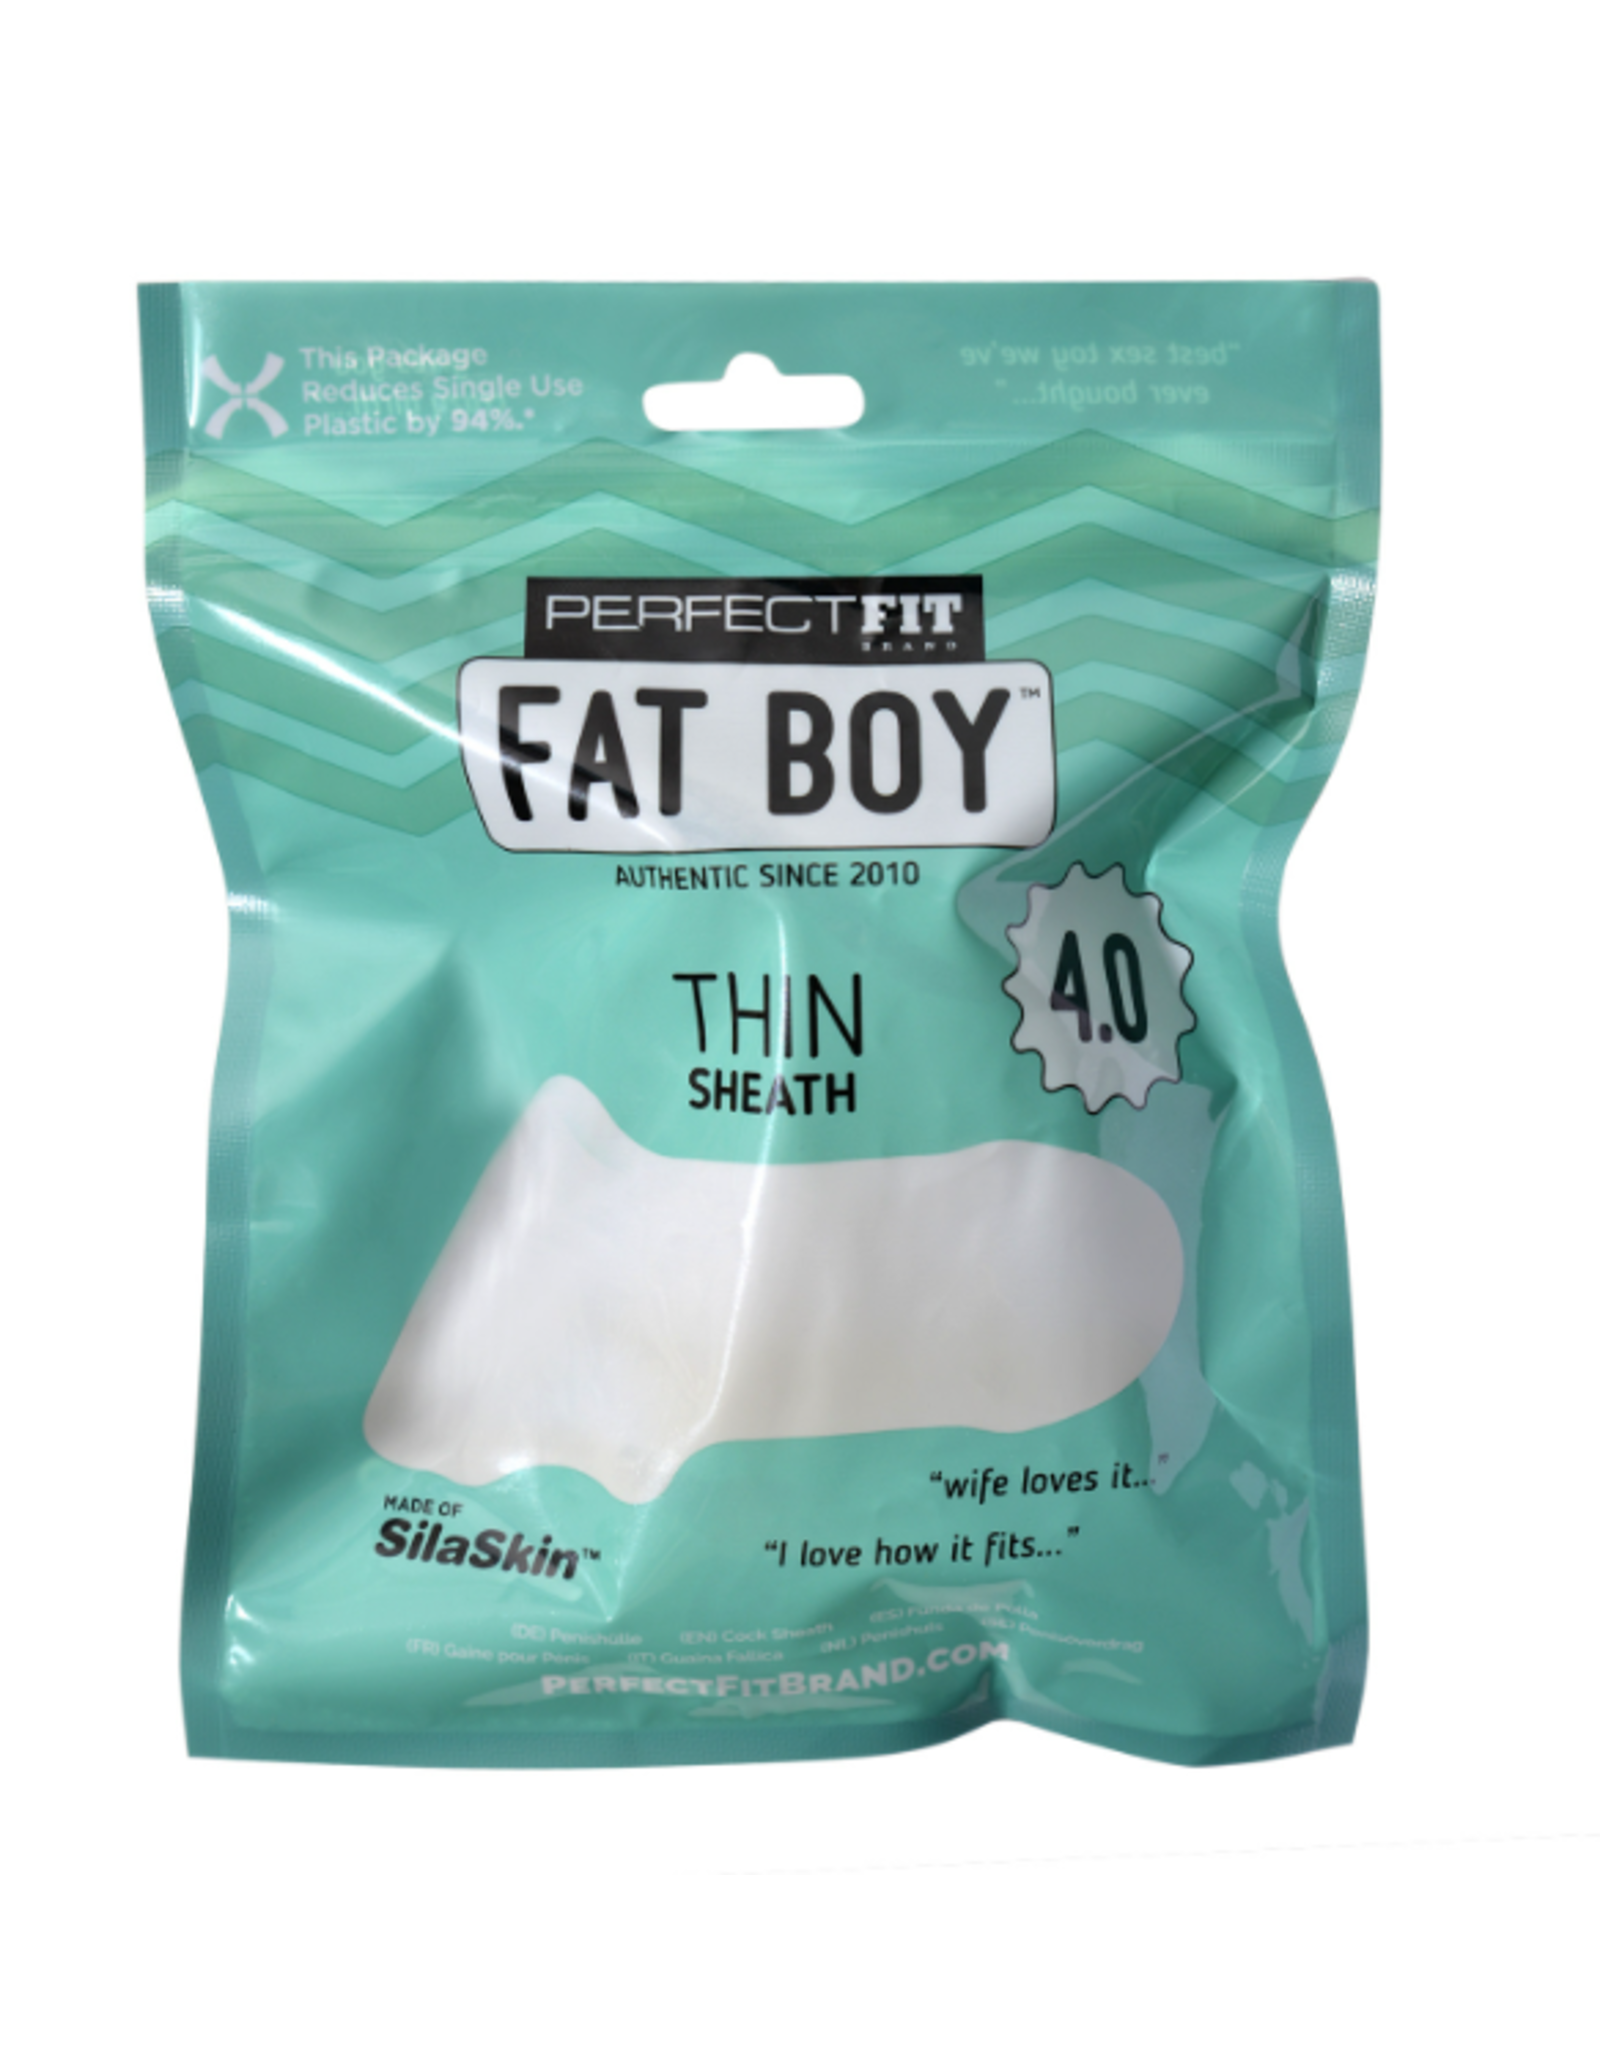 PerfectFit - Fat Boy Thin Seath 4.0 - Clear